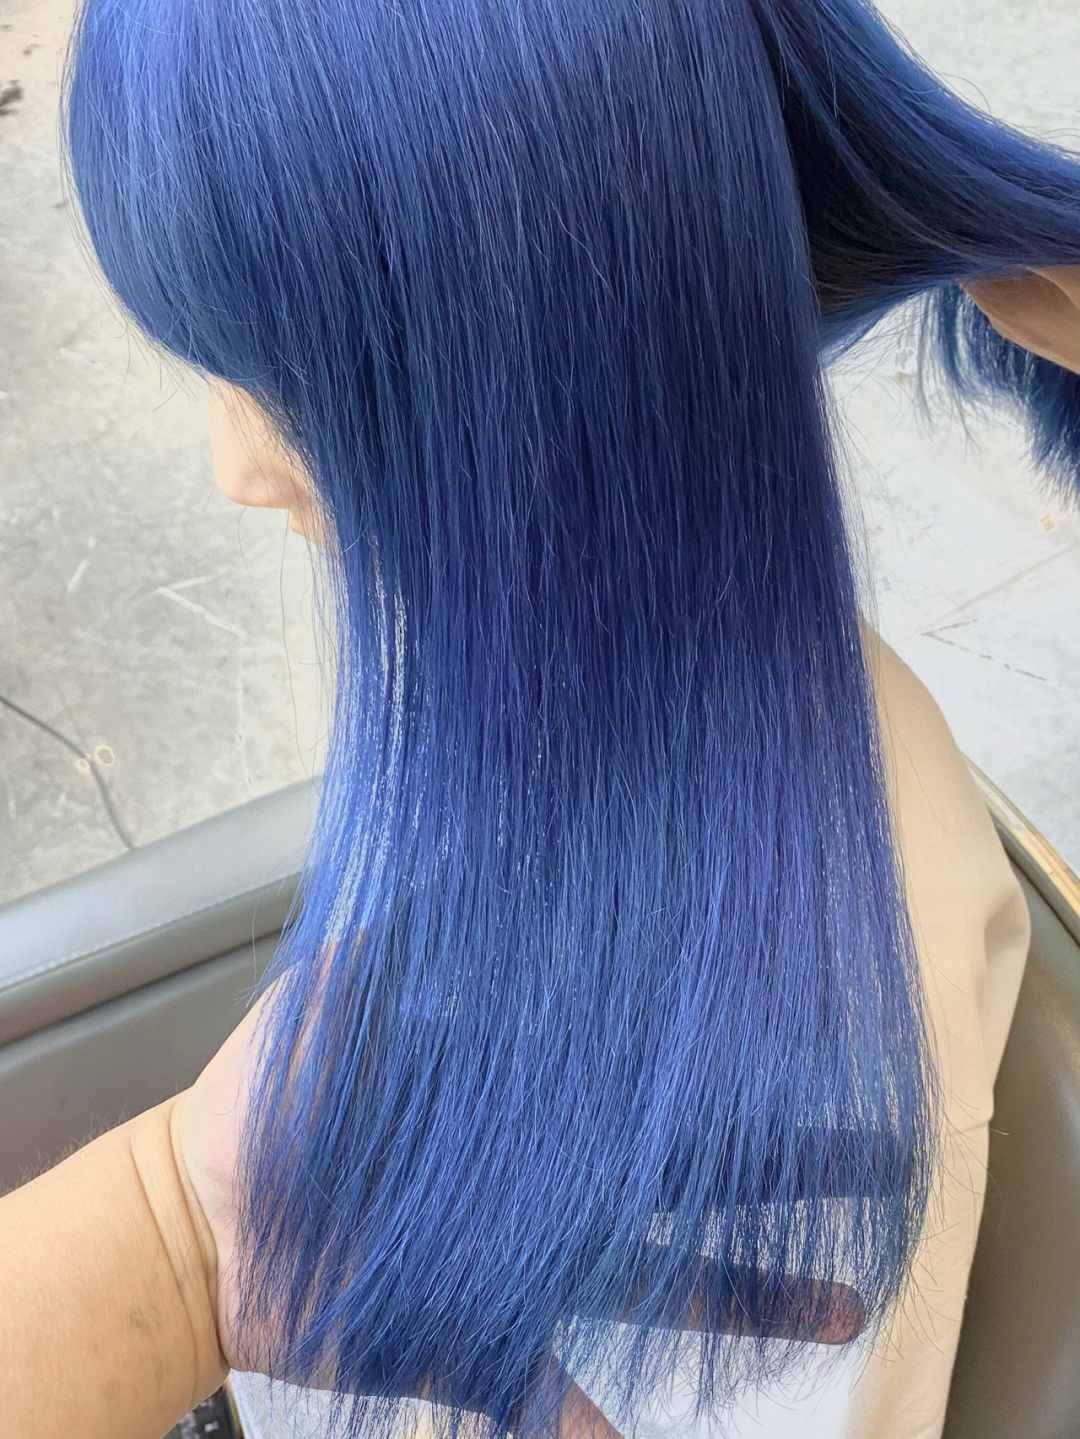 都说漂发伤头发,可海蓝色,实在太喜欢太美了越洗越好看的海蓝色冷艳